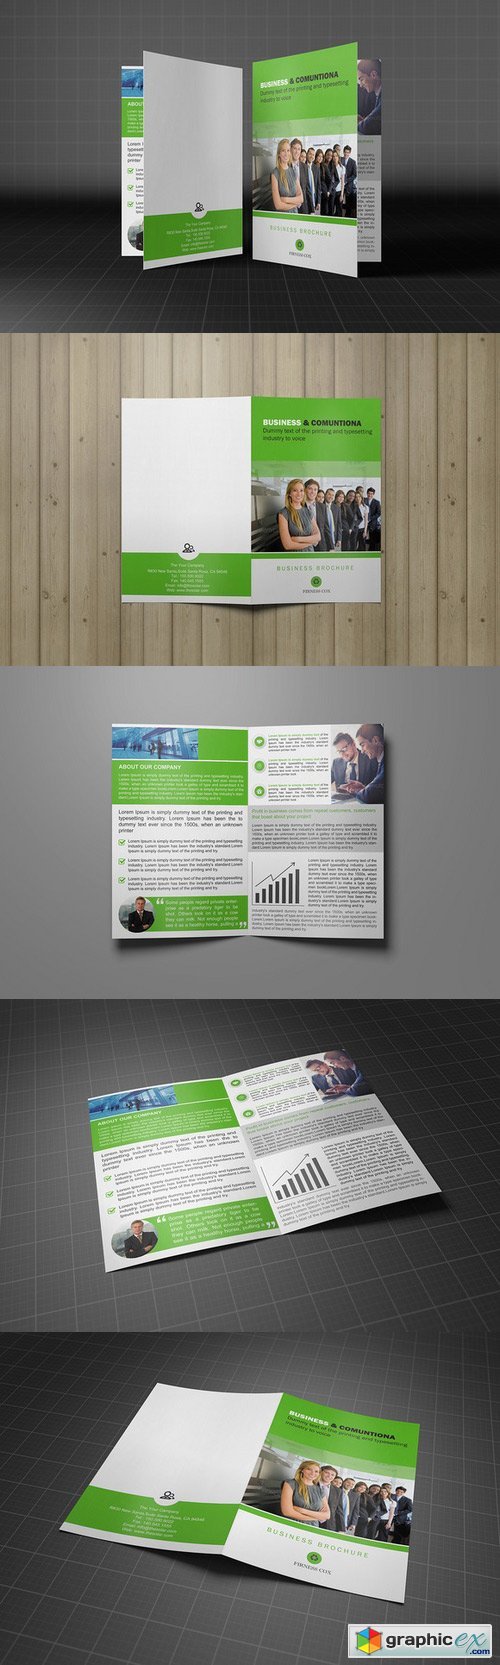 Bifold Business Brochure Template 215941